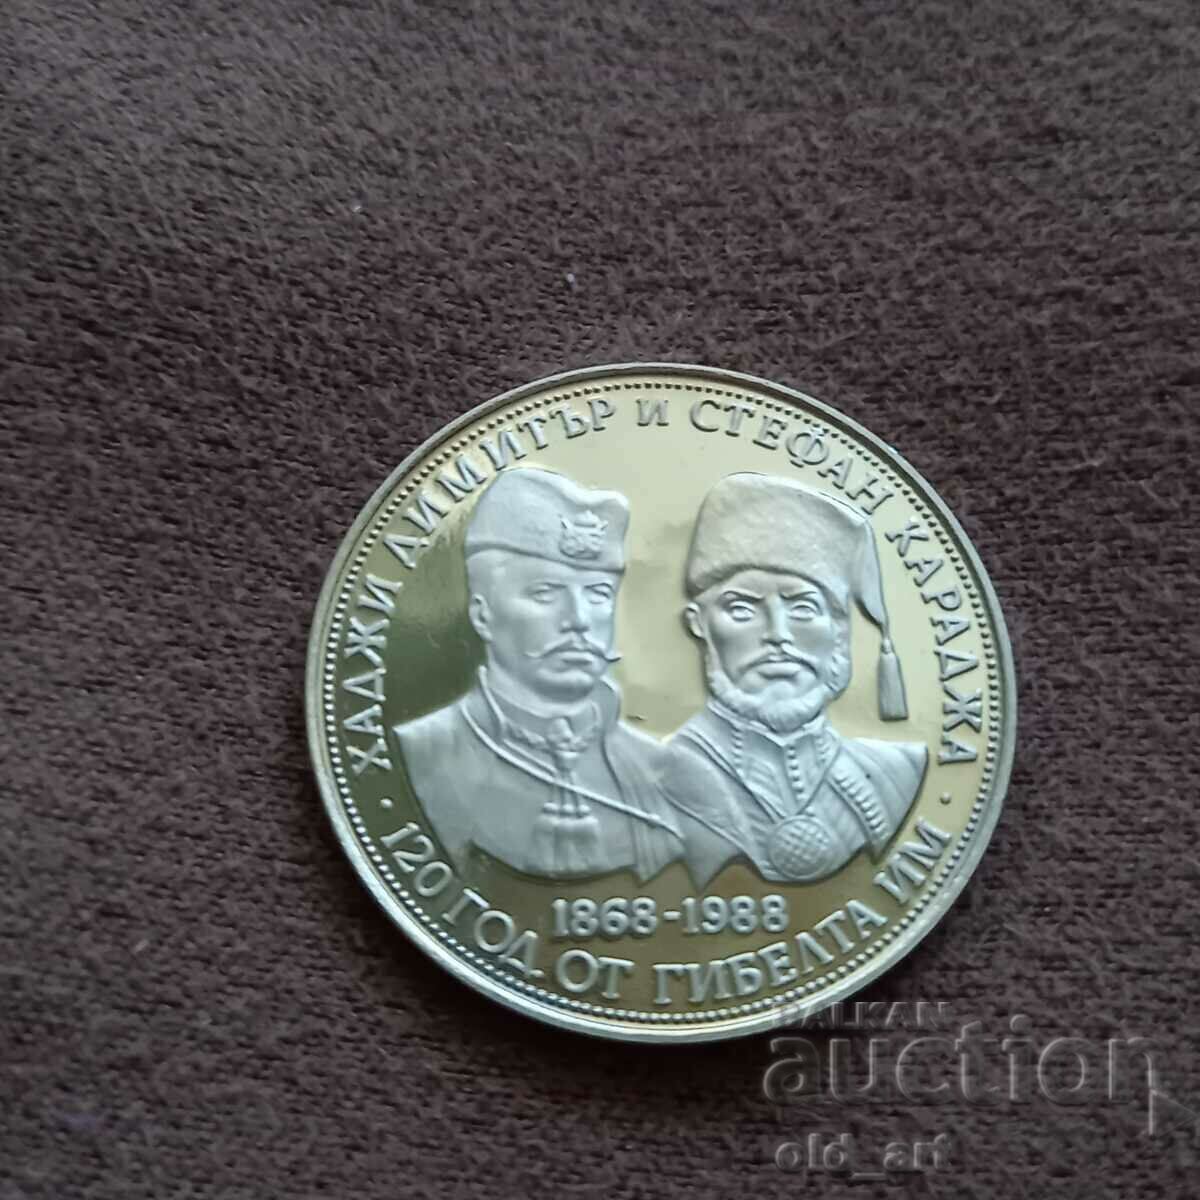 Coin - 5 BGN 1988. Hadji Dimitar and Stefan Karadzha